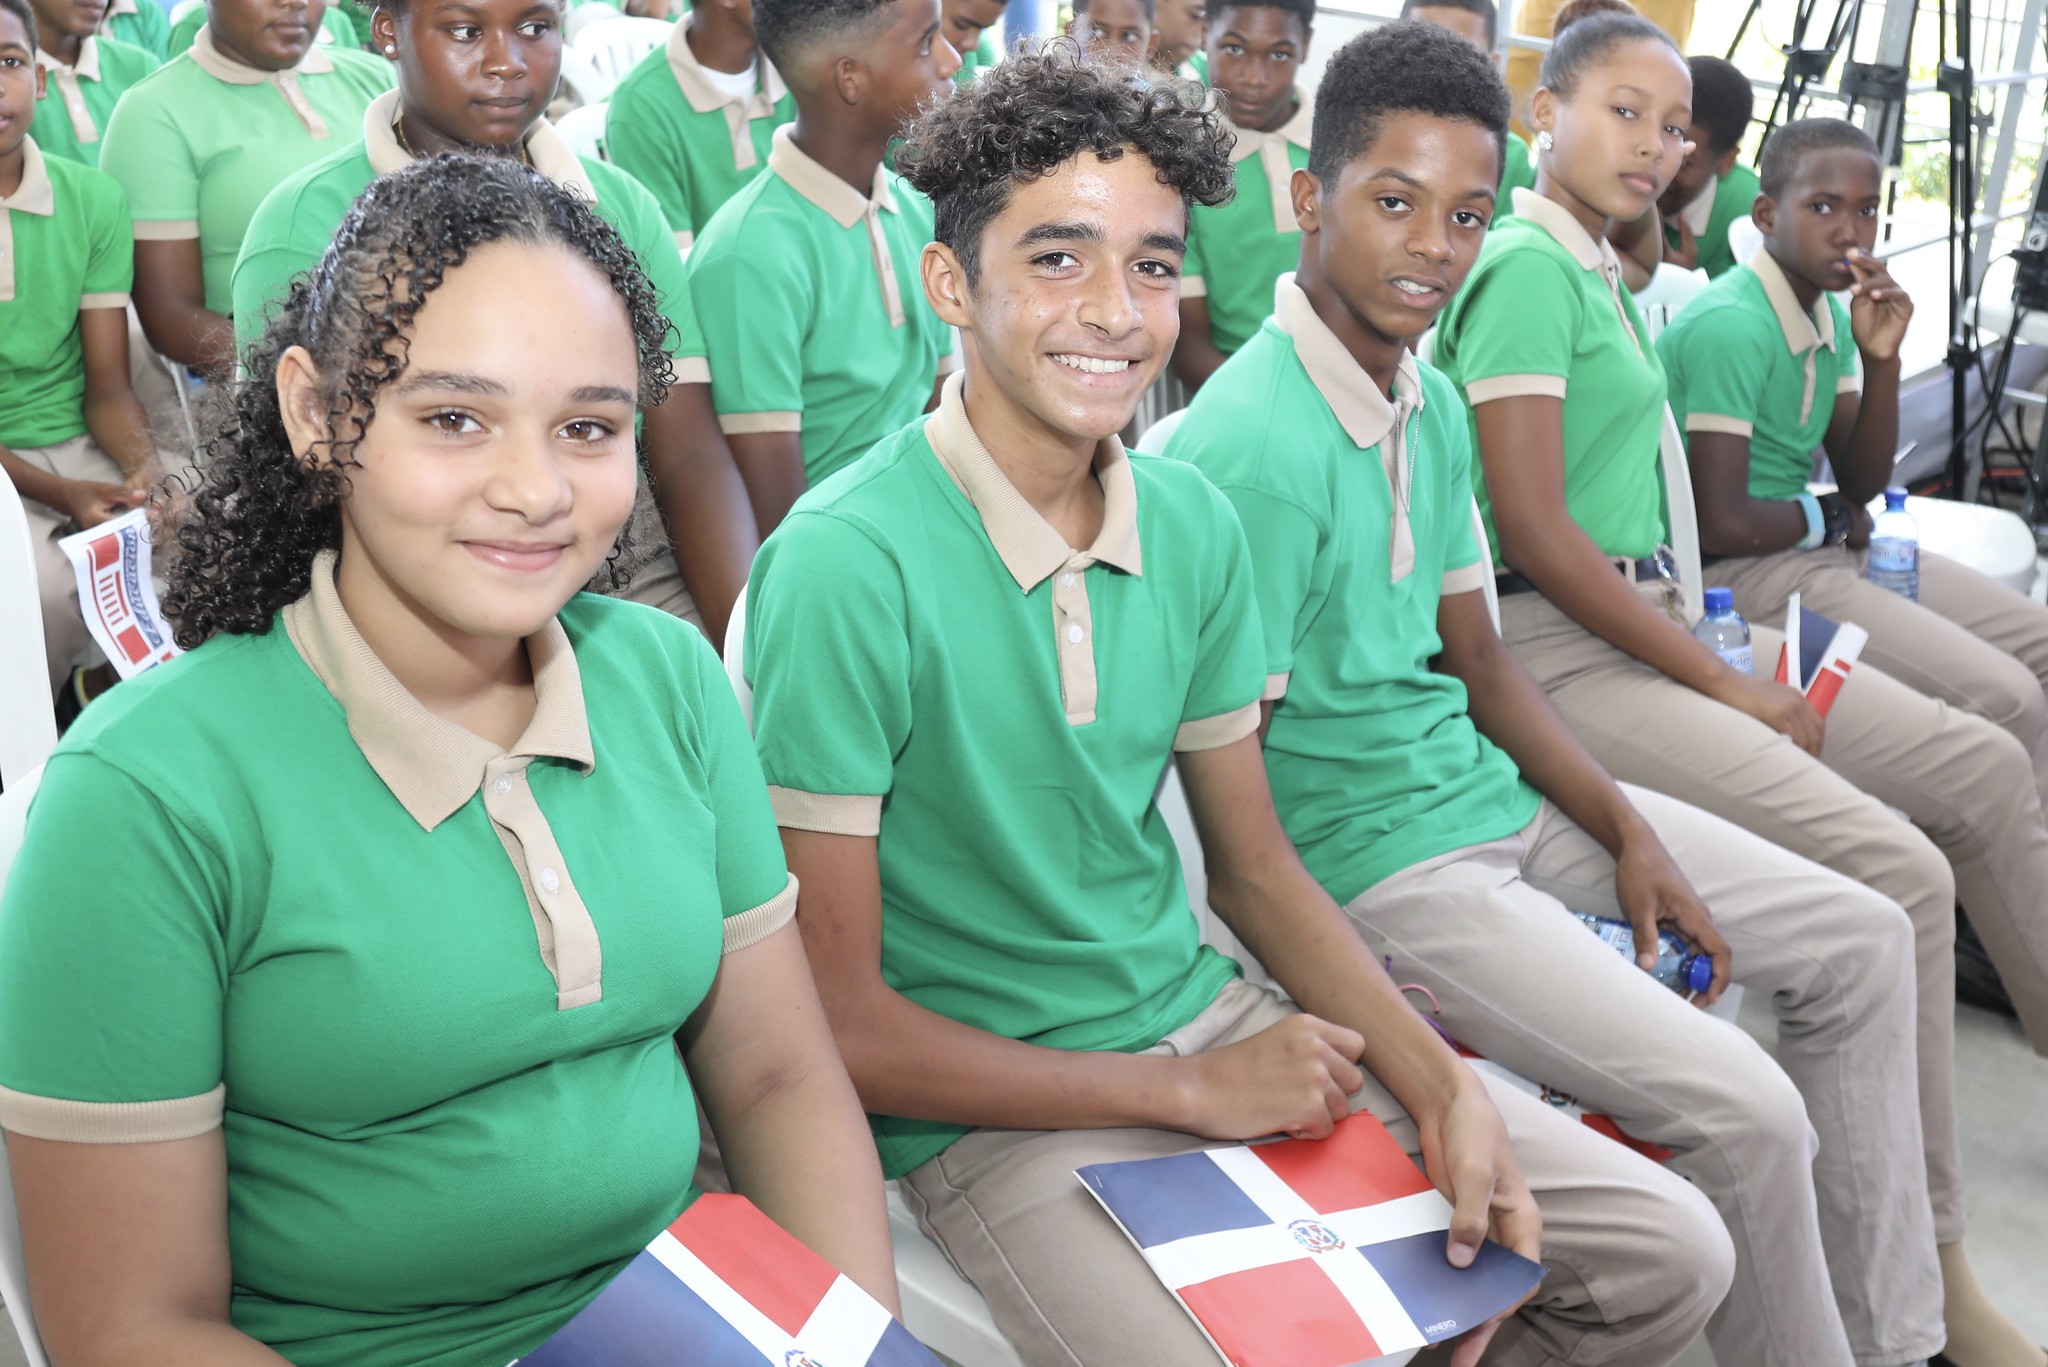 REPÚBLICA DOMINICANA: La Romana: presidente Danilo Medina entrega escuela y un politécnico en arte. 93% de estudiantes está en Jornada Escolar Extendida